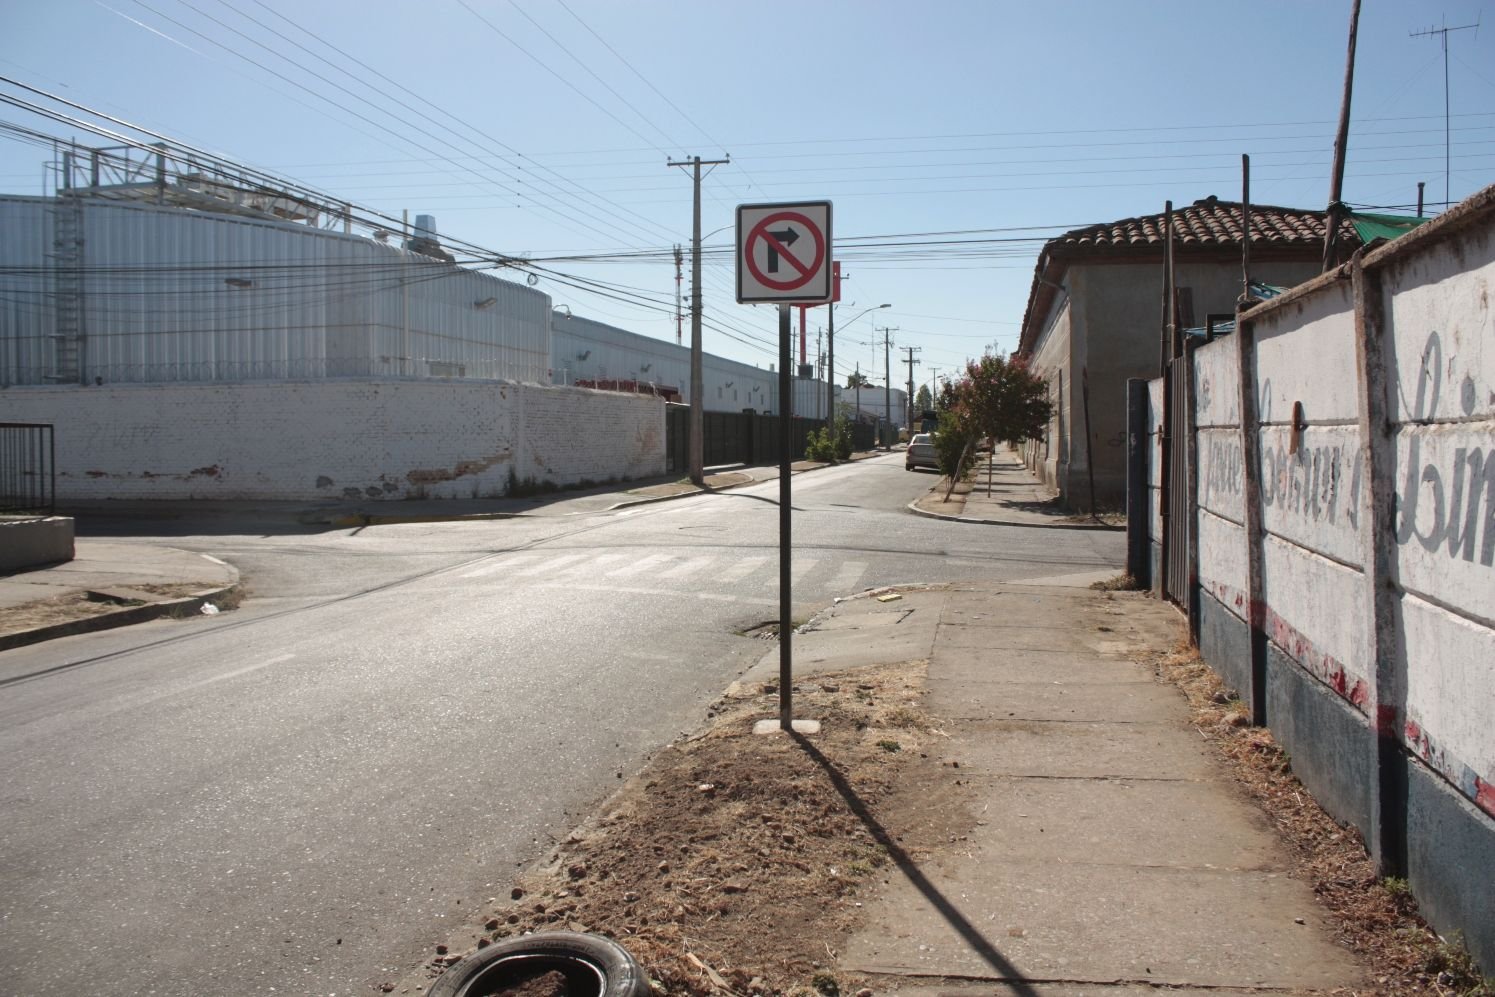 Letreros de No Ingreso a Camiones y cambio de sentido de tránsito a calle Miraflores (19)